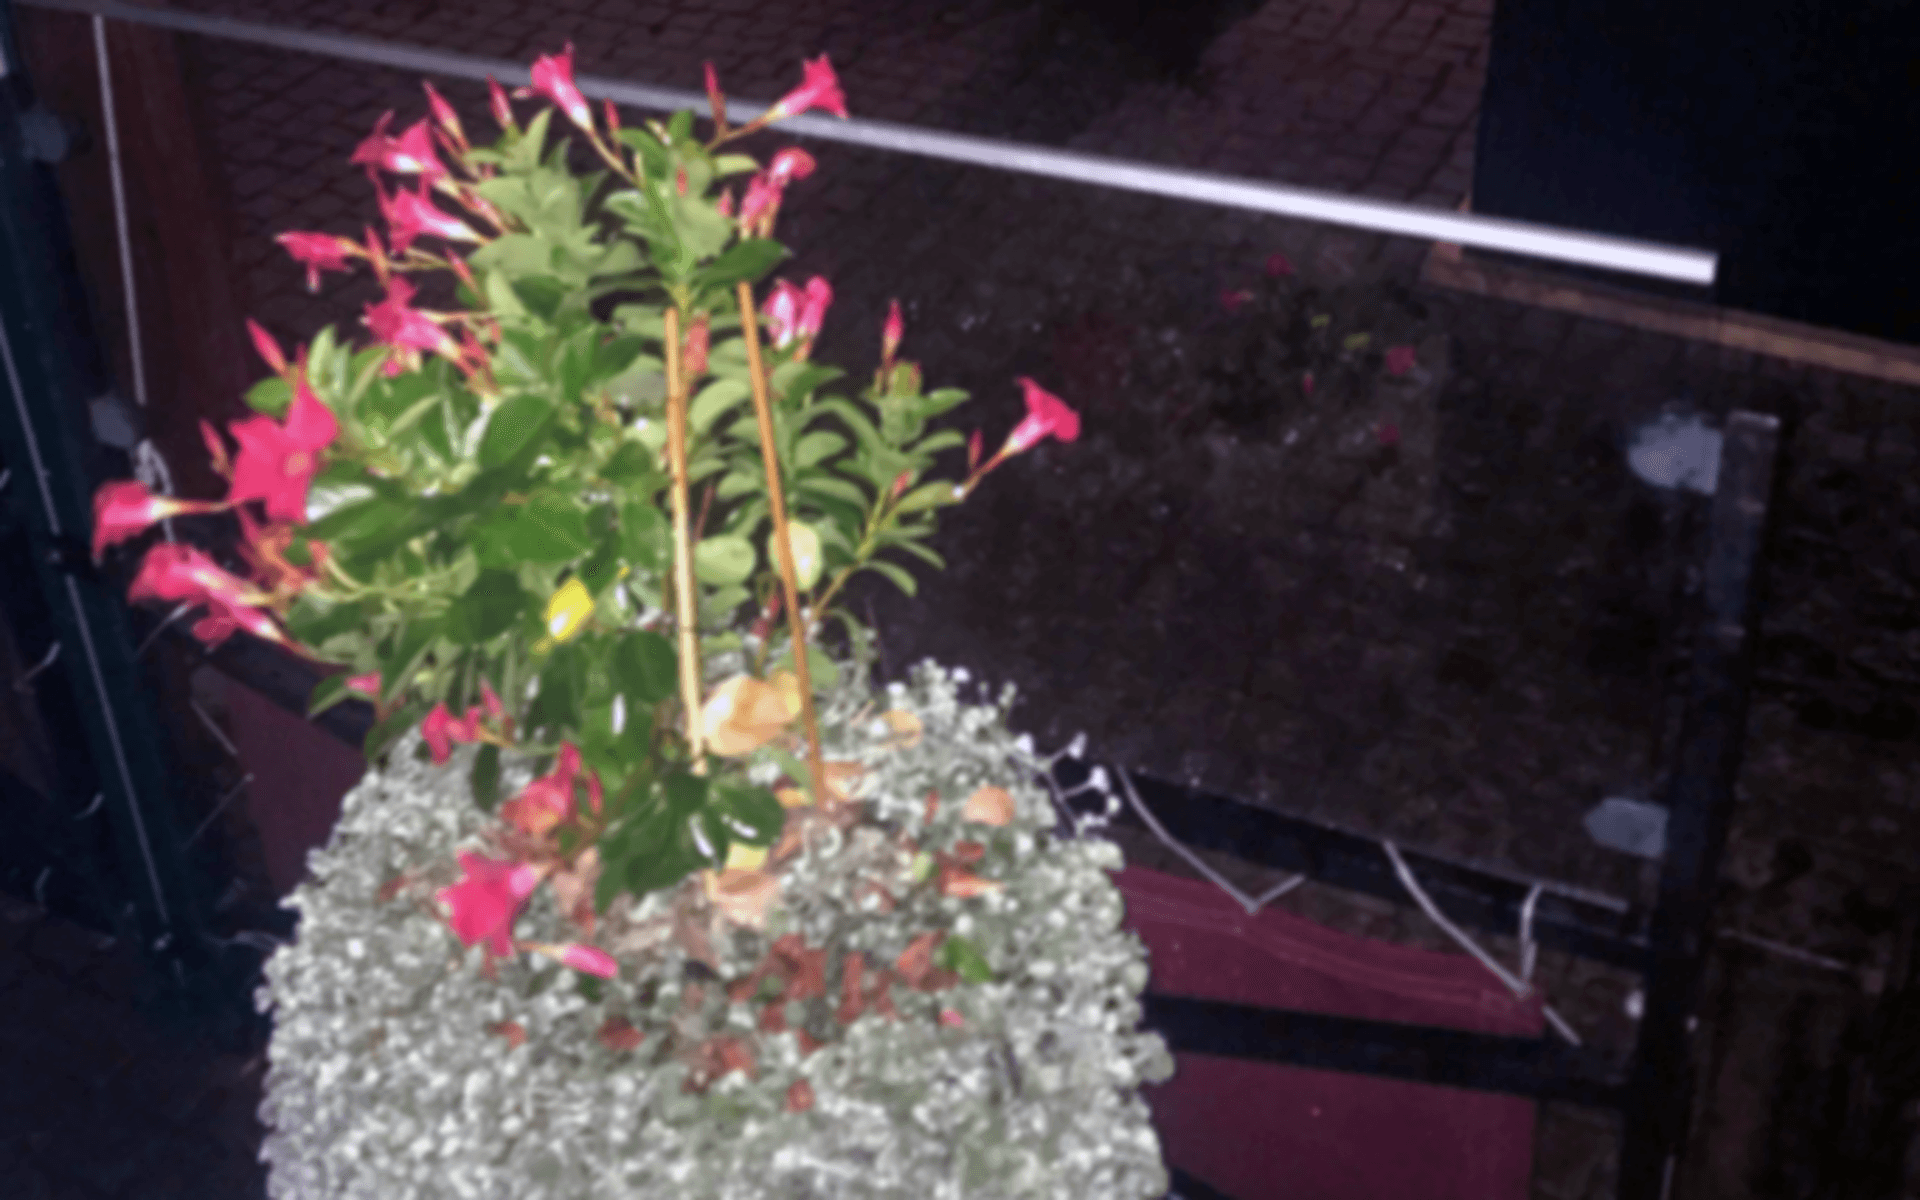 Mannen misstänks ha slängt en del av den här blomman och även tagit en blompinne och huggt mot vakten.